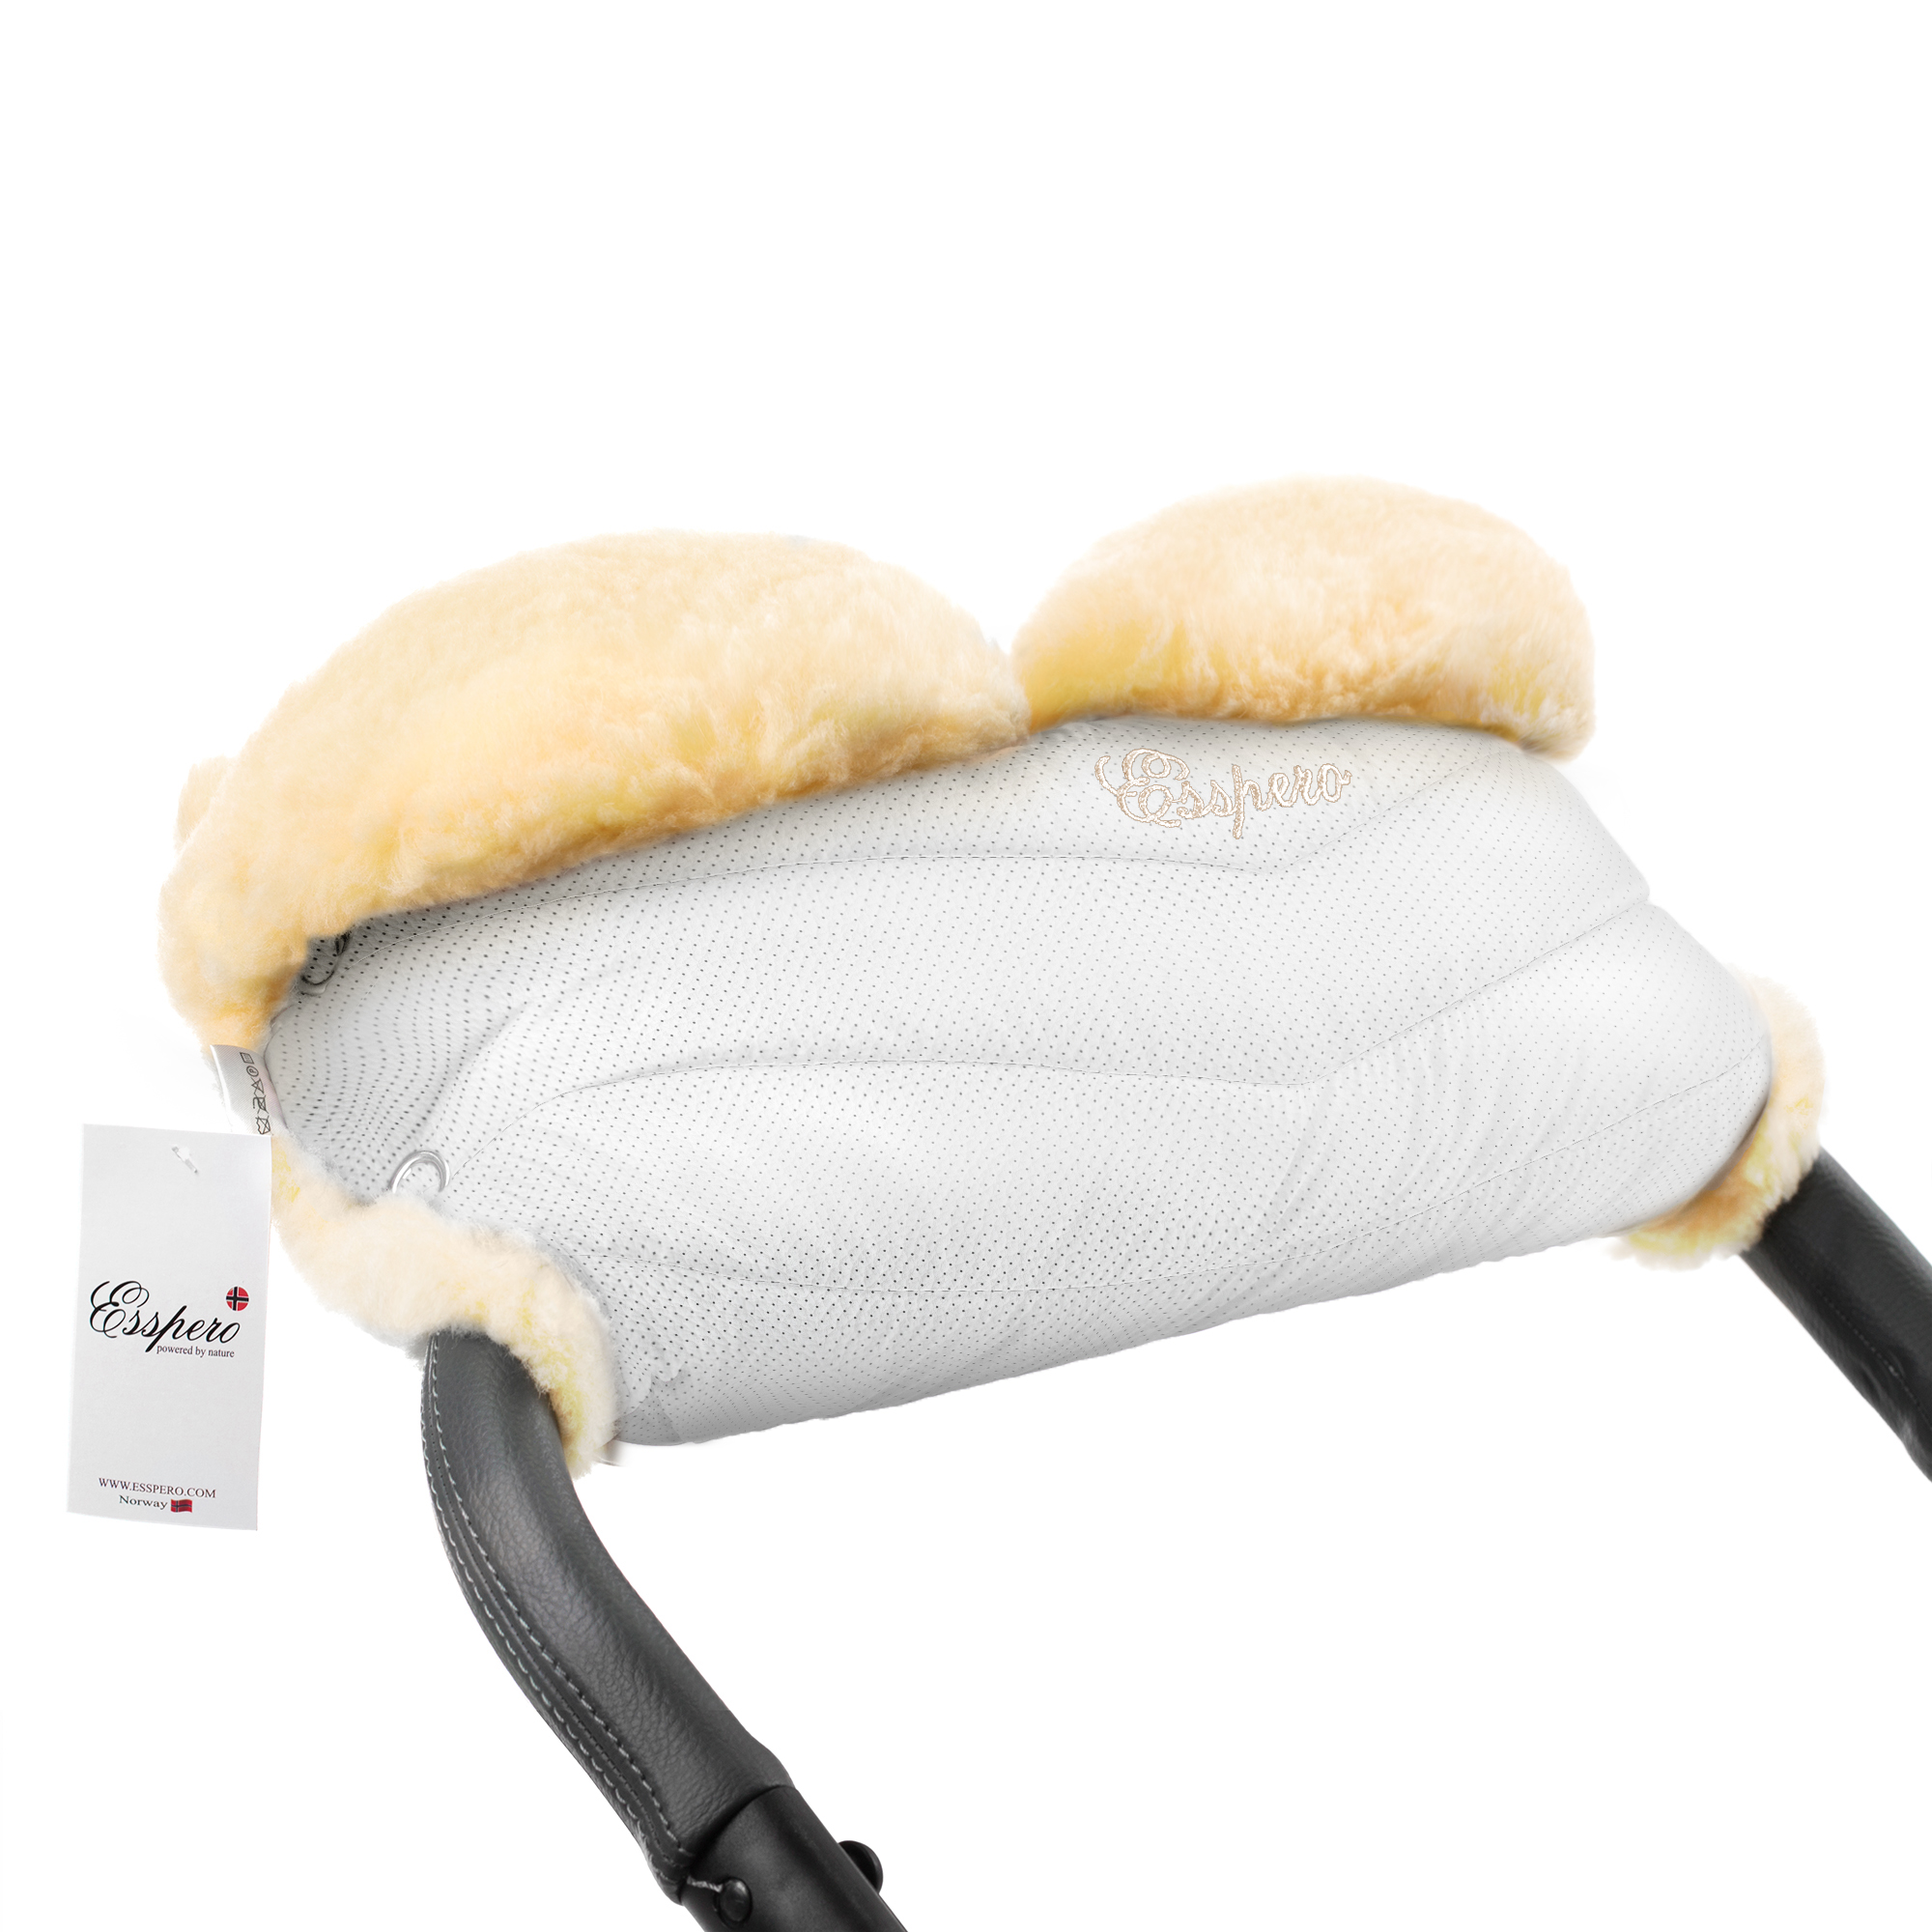 Муфта для рук на коляску Esspero Cosy Lux, натуральная шерсть, White конверт в коляску esspero markus almond 100% шерсть